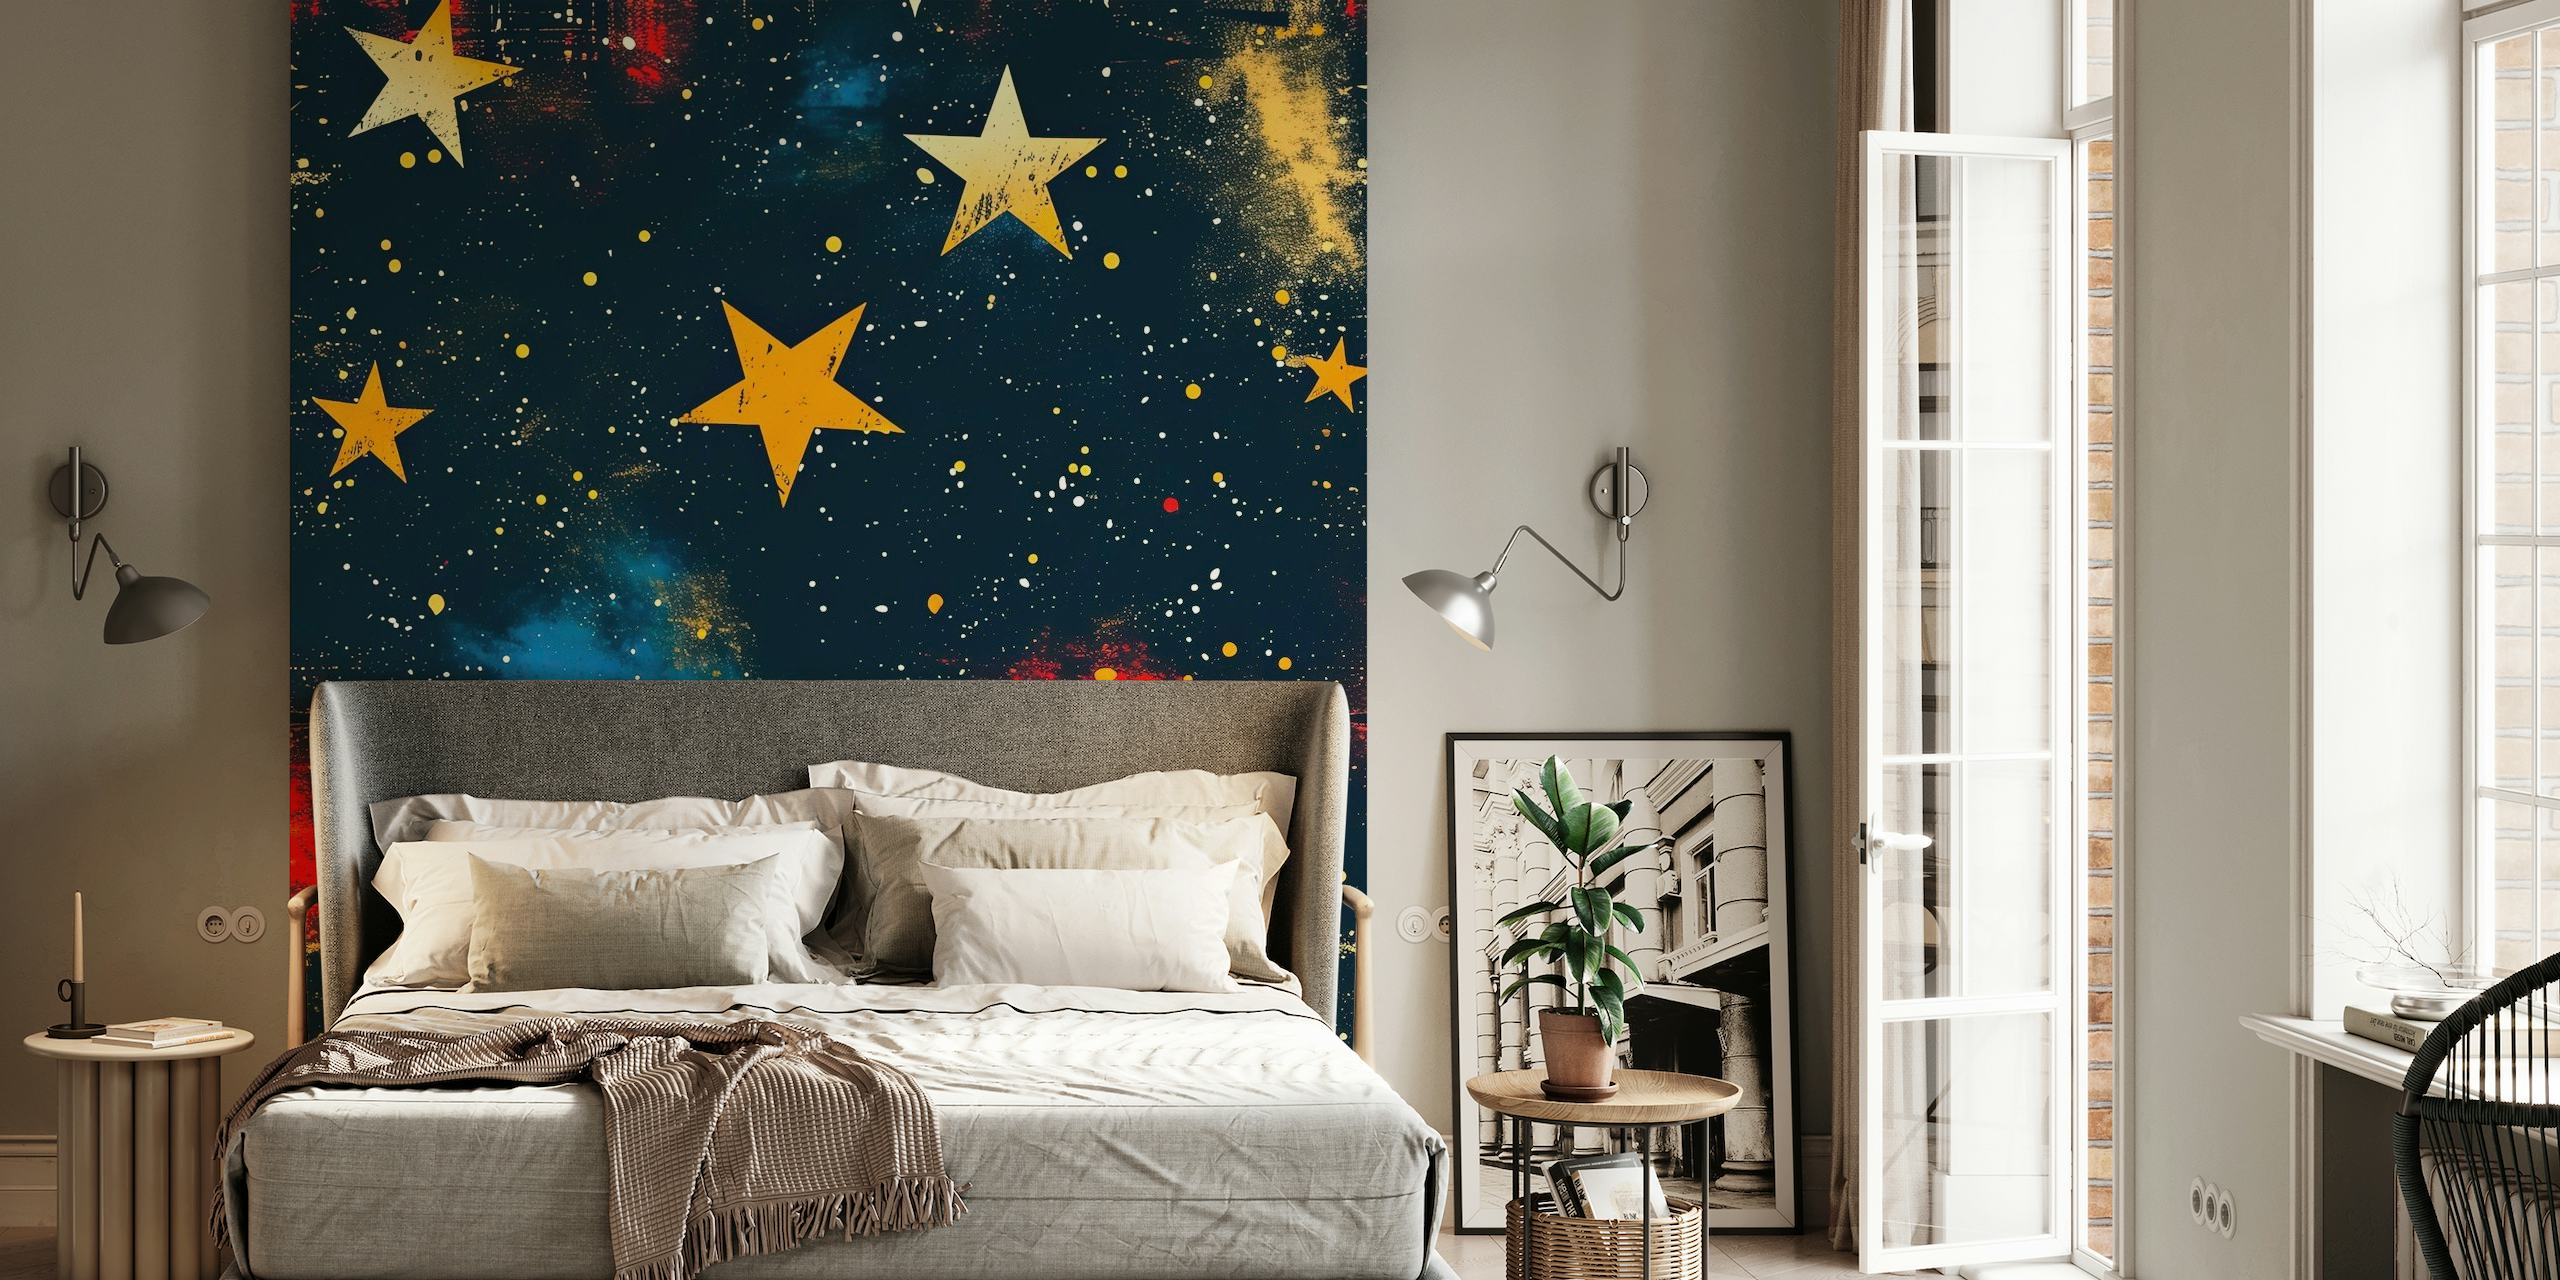 The Stars Above -seinämaalaus, jossa eloisia tähtiä ja sumuja tummalla taustalla